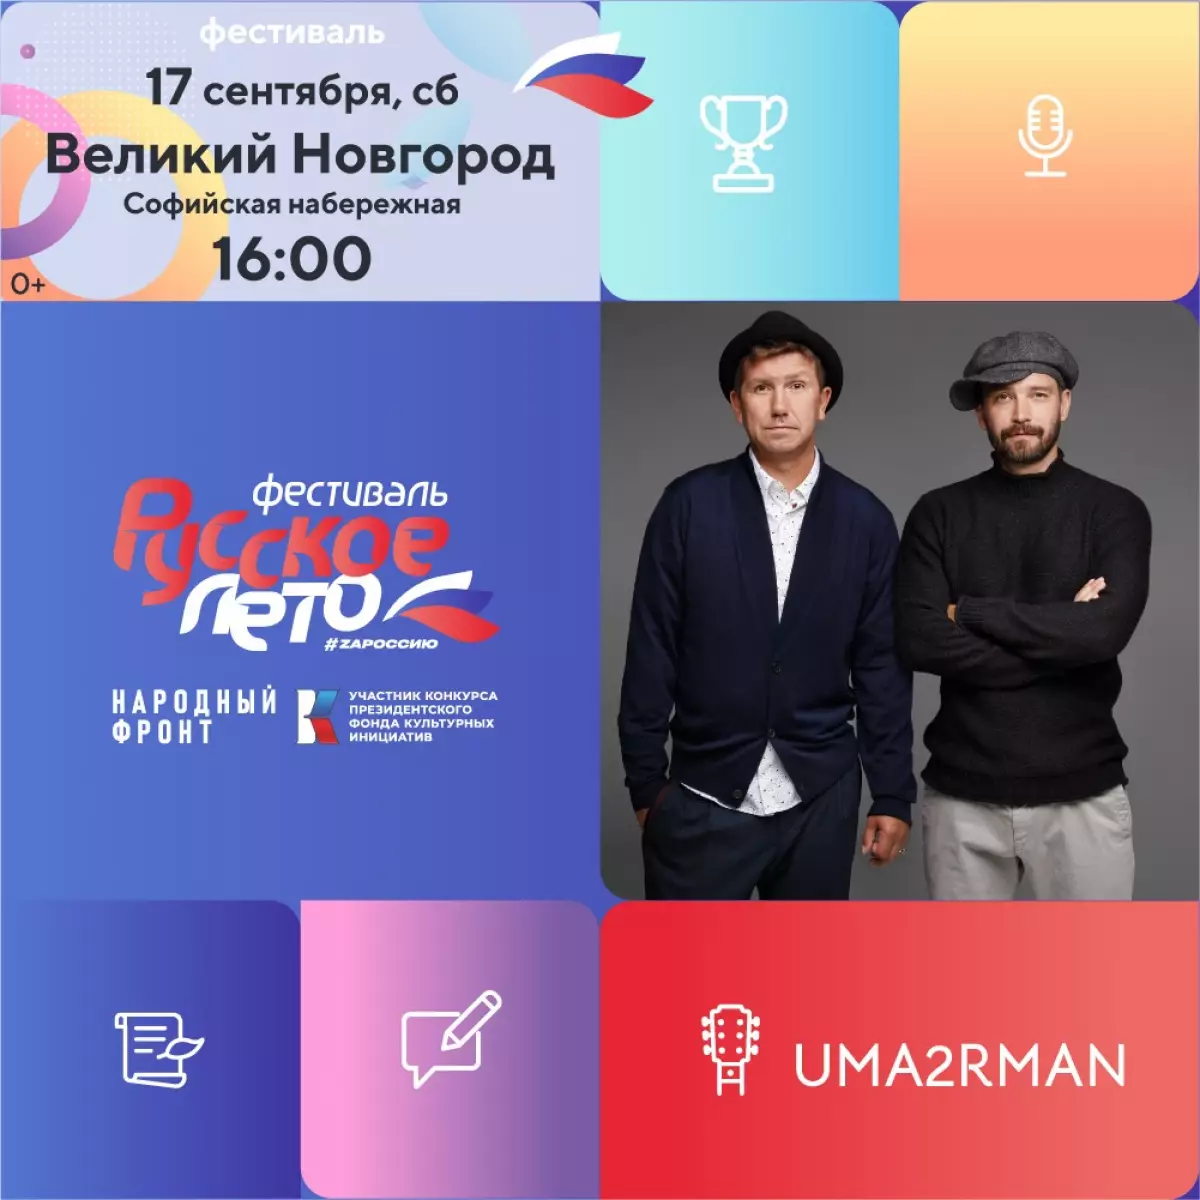 Музыкальный фестиваль «Русское лето. ZаРоссию» пройдёт в Великом Новгороде 17 сентября и завершится концертом популярной группы Uma2rman.